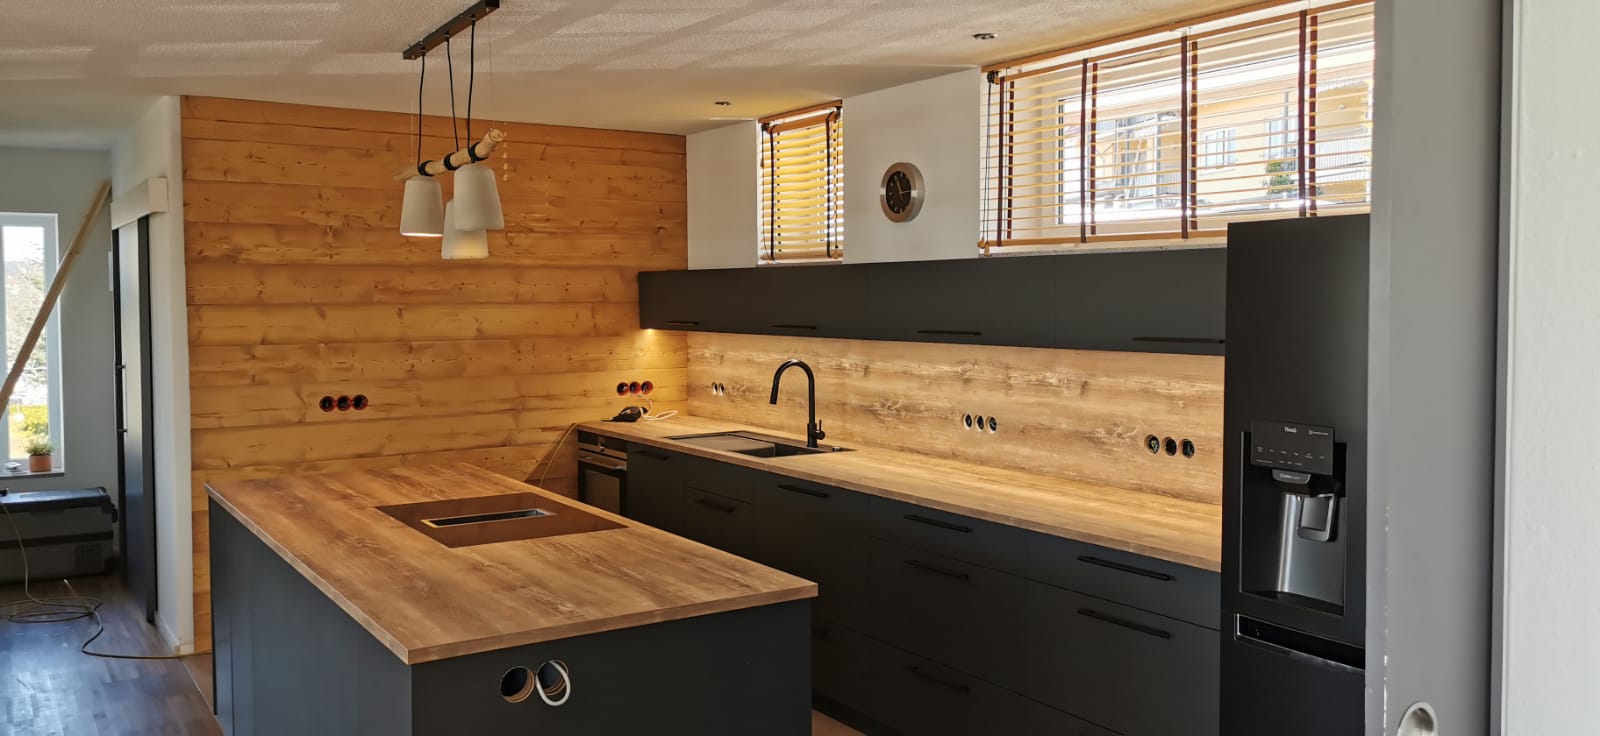 Küche mit Holzwand und LED Beleuchtung